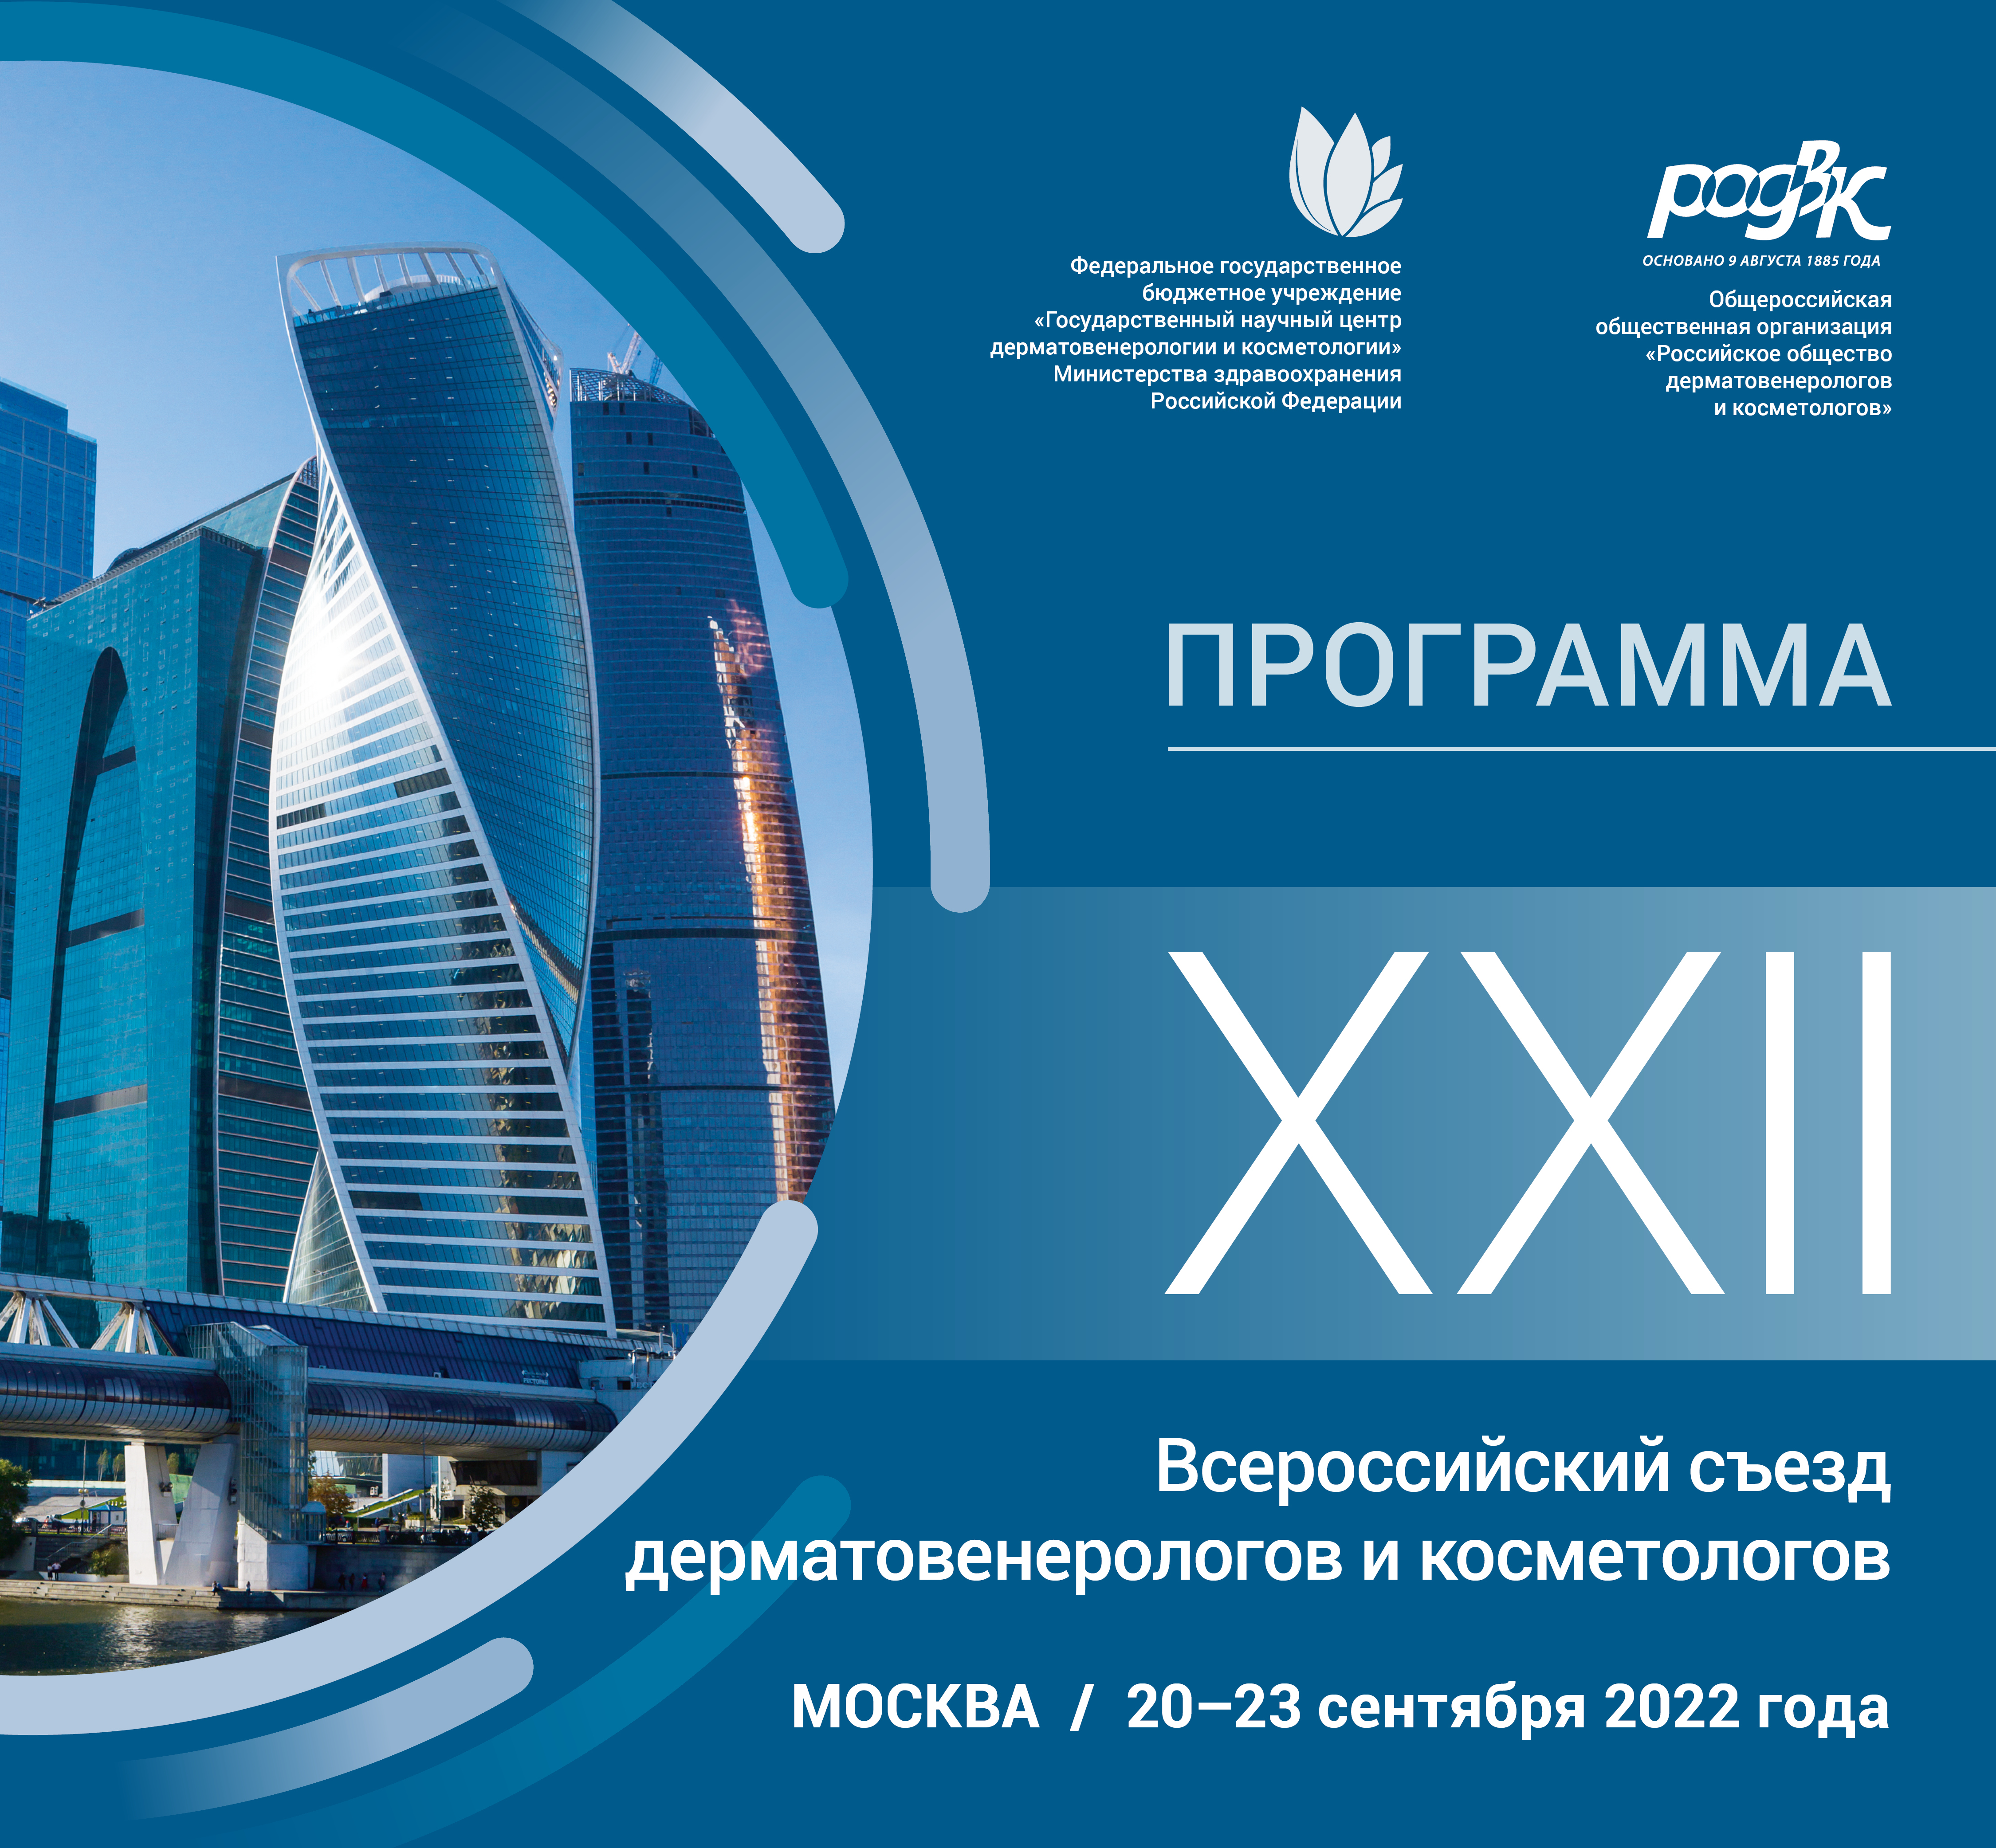 Научная программа XXII Всероссийского съезда дерматовенерологов и косметологов